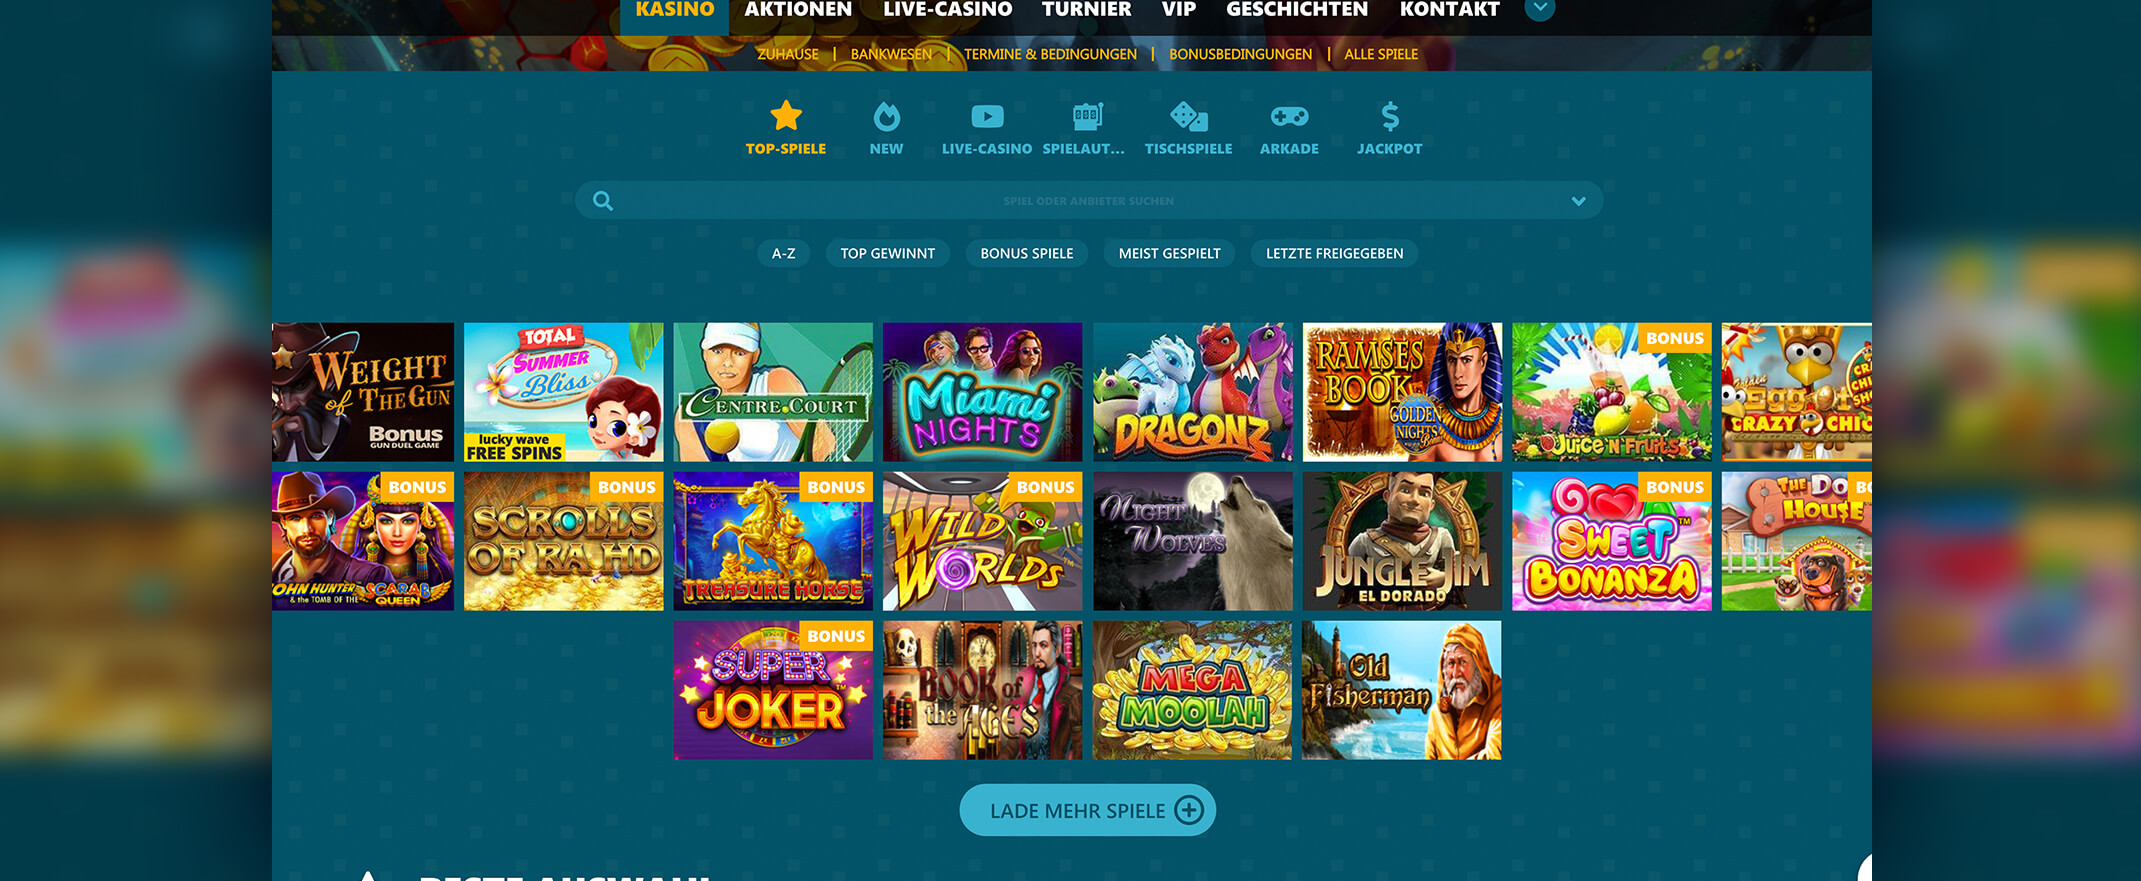 Spinaru Casino Spieleauswahl